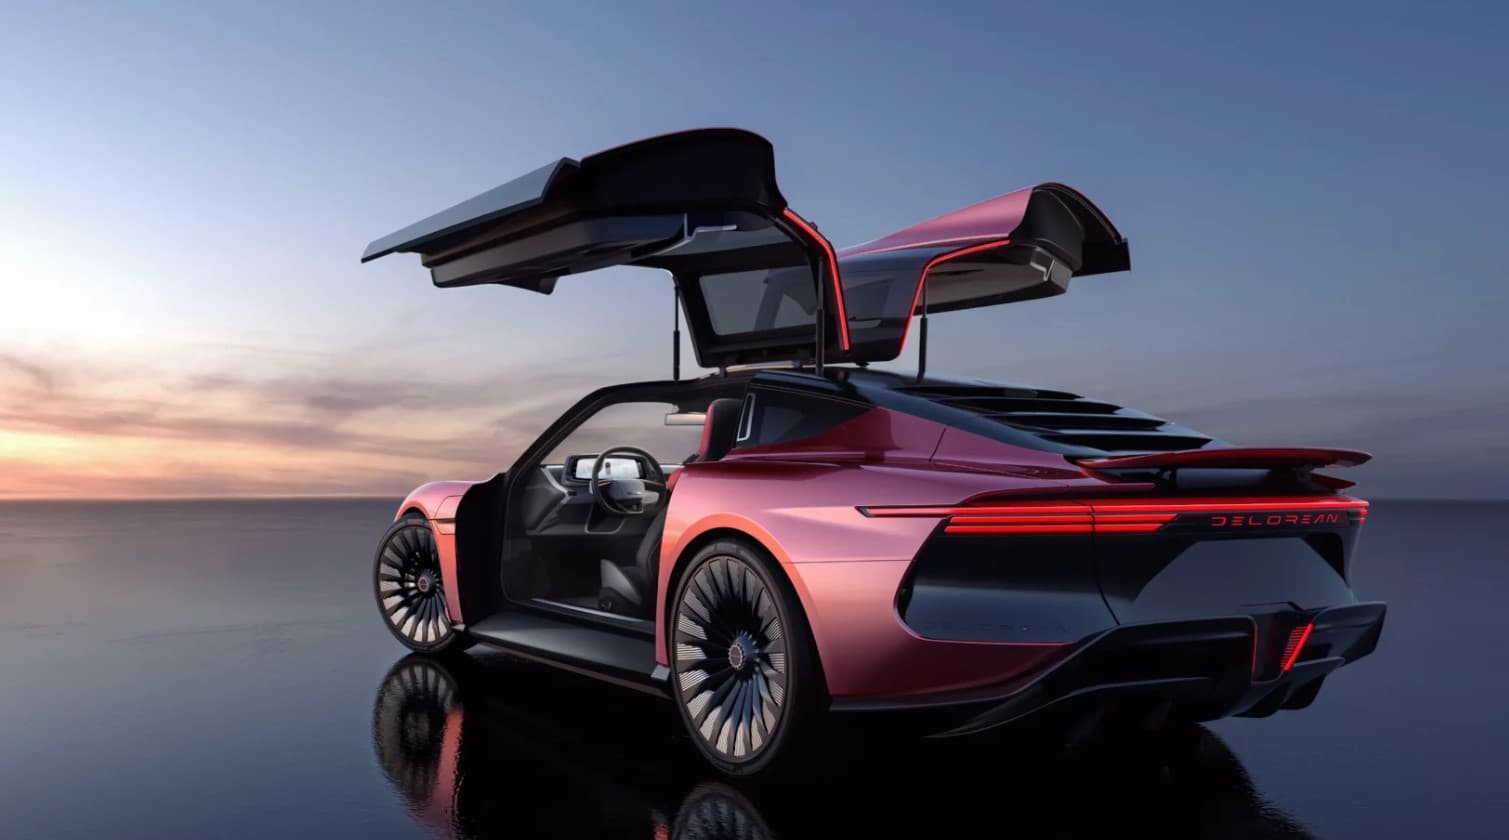 Pourquoi la DeLorean a-t-elle été choisie comme voiture pour les films 'Retour  vers le Futur' ? D'autres voitures ont-elles été envisagées ? - Quora